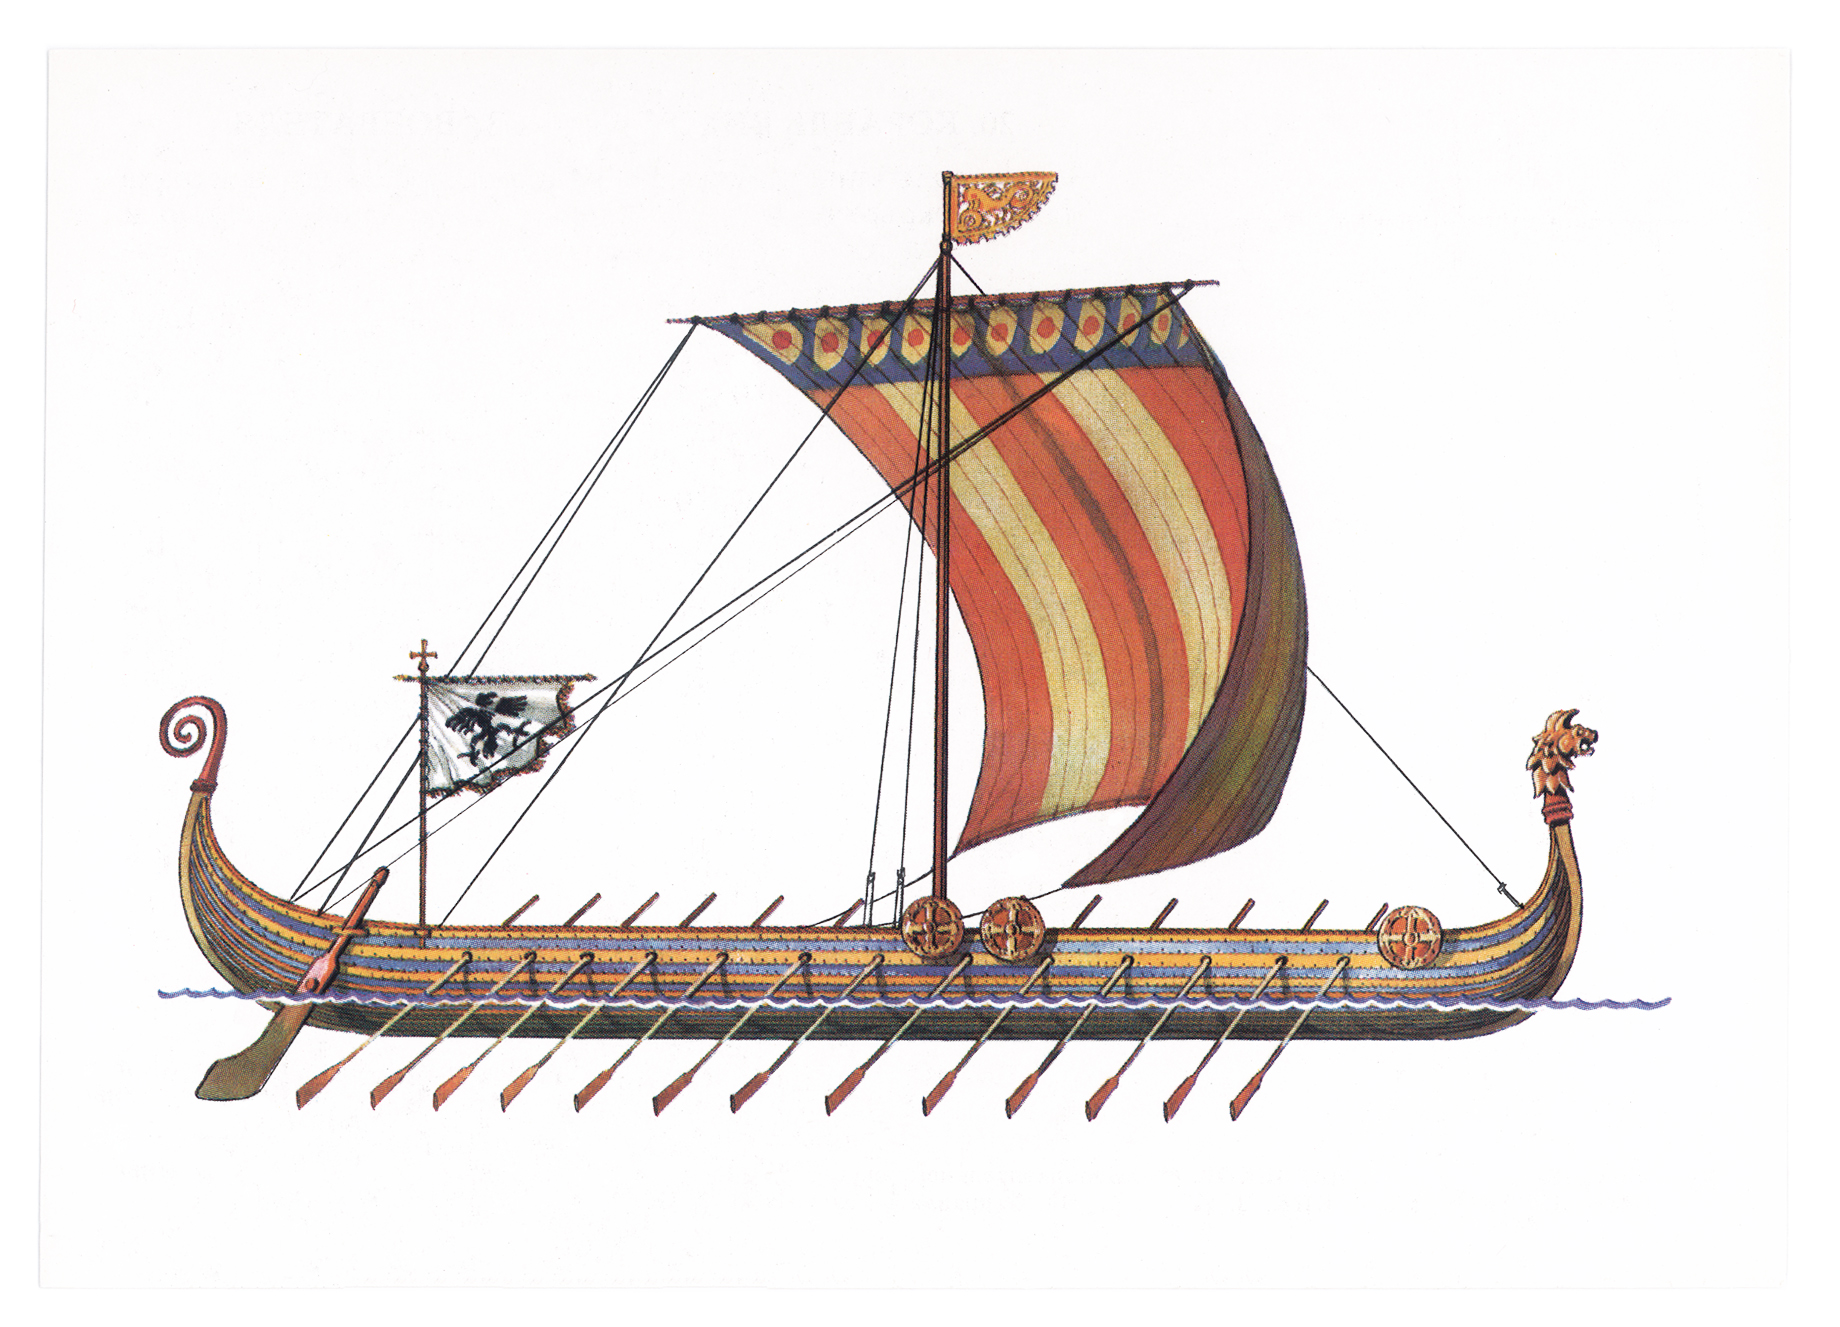 Три ладьи. Корабль викингов Drakkar. Ладья викингов дракар. Корабль викингов Драккар 10 век. Корабли Вильгельма завоевателя.